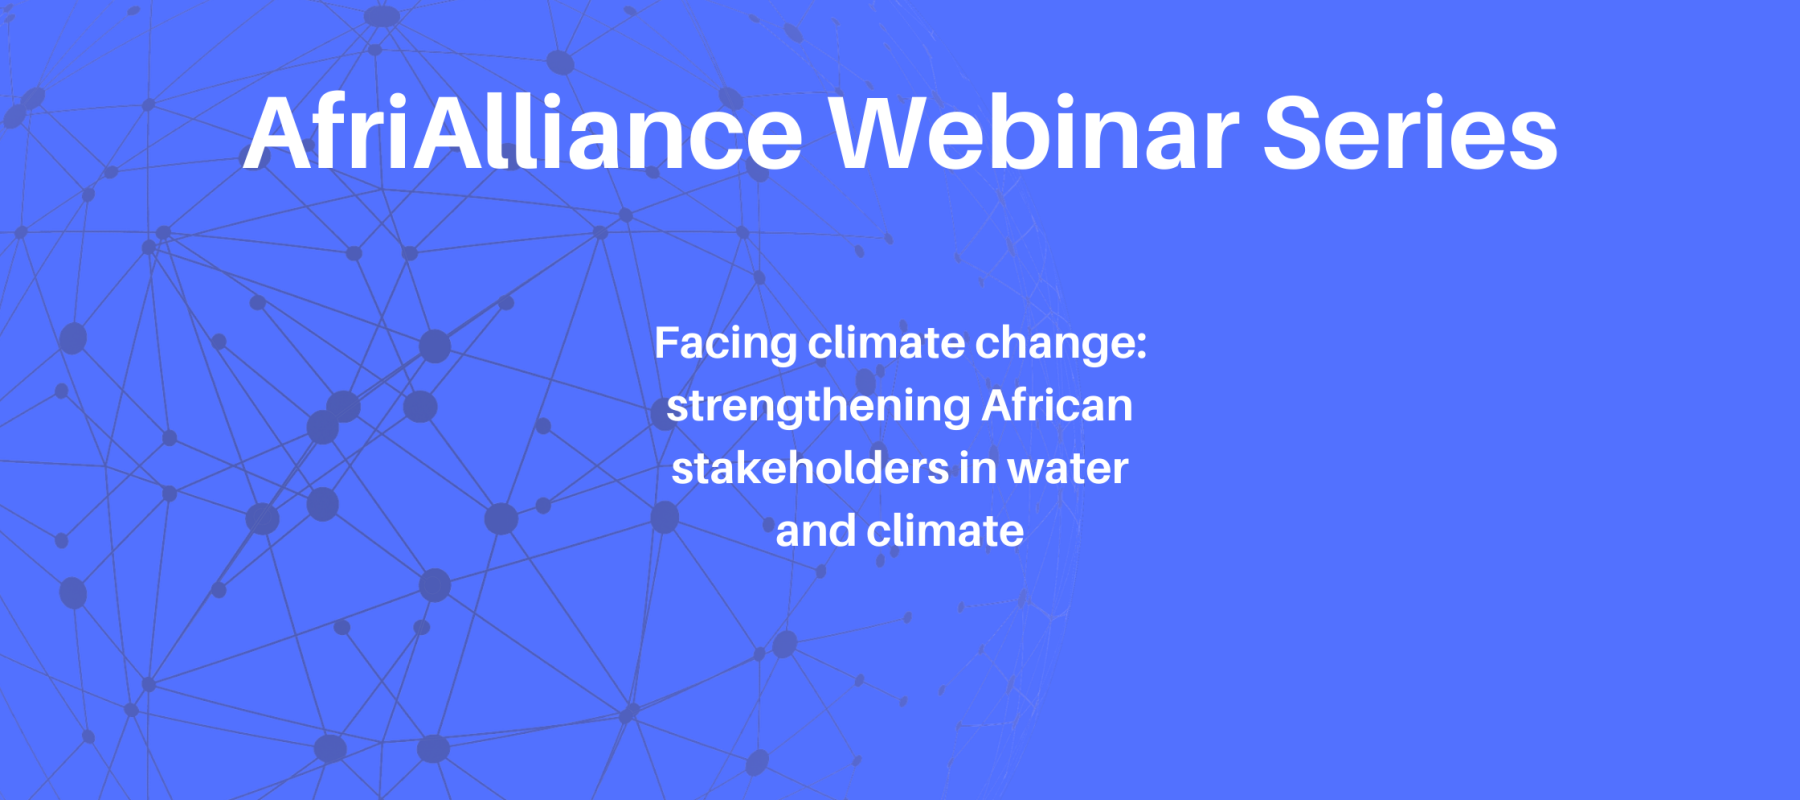 AfriAlliance Webinar Series